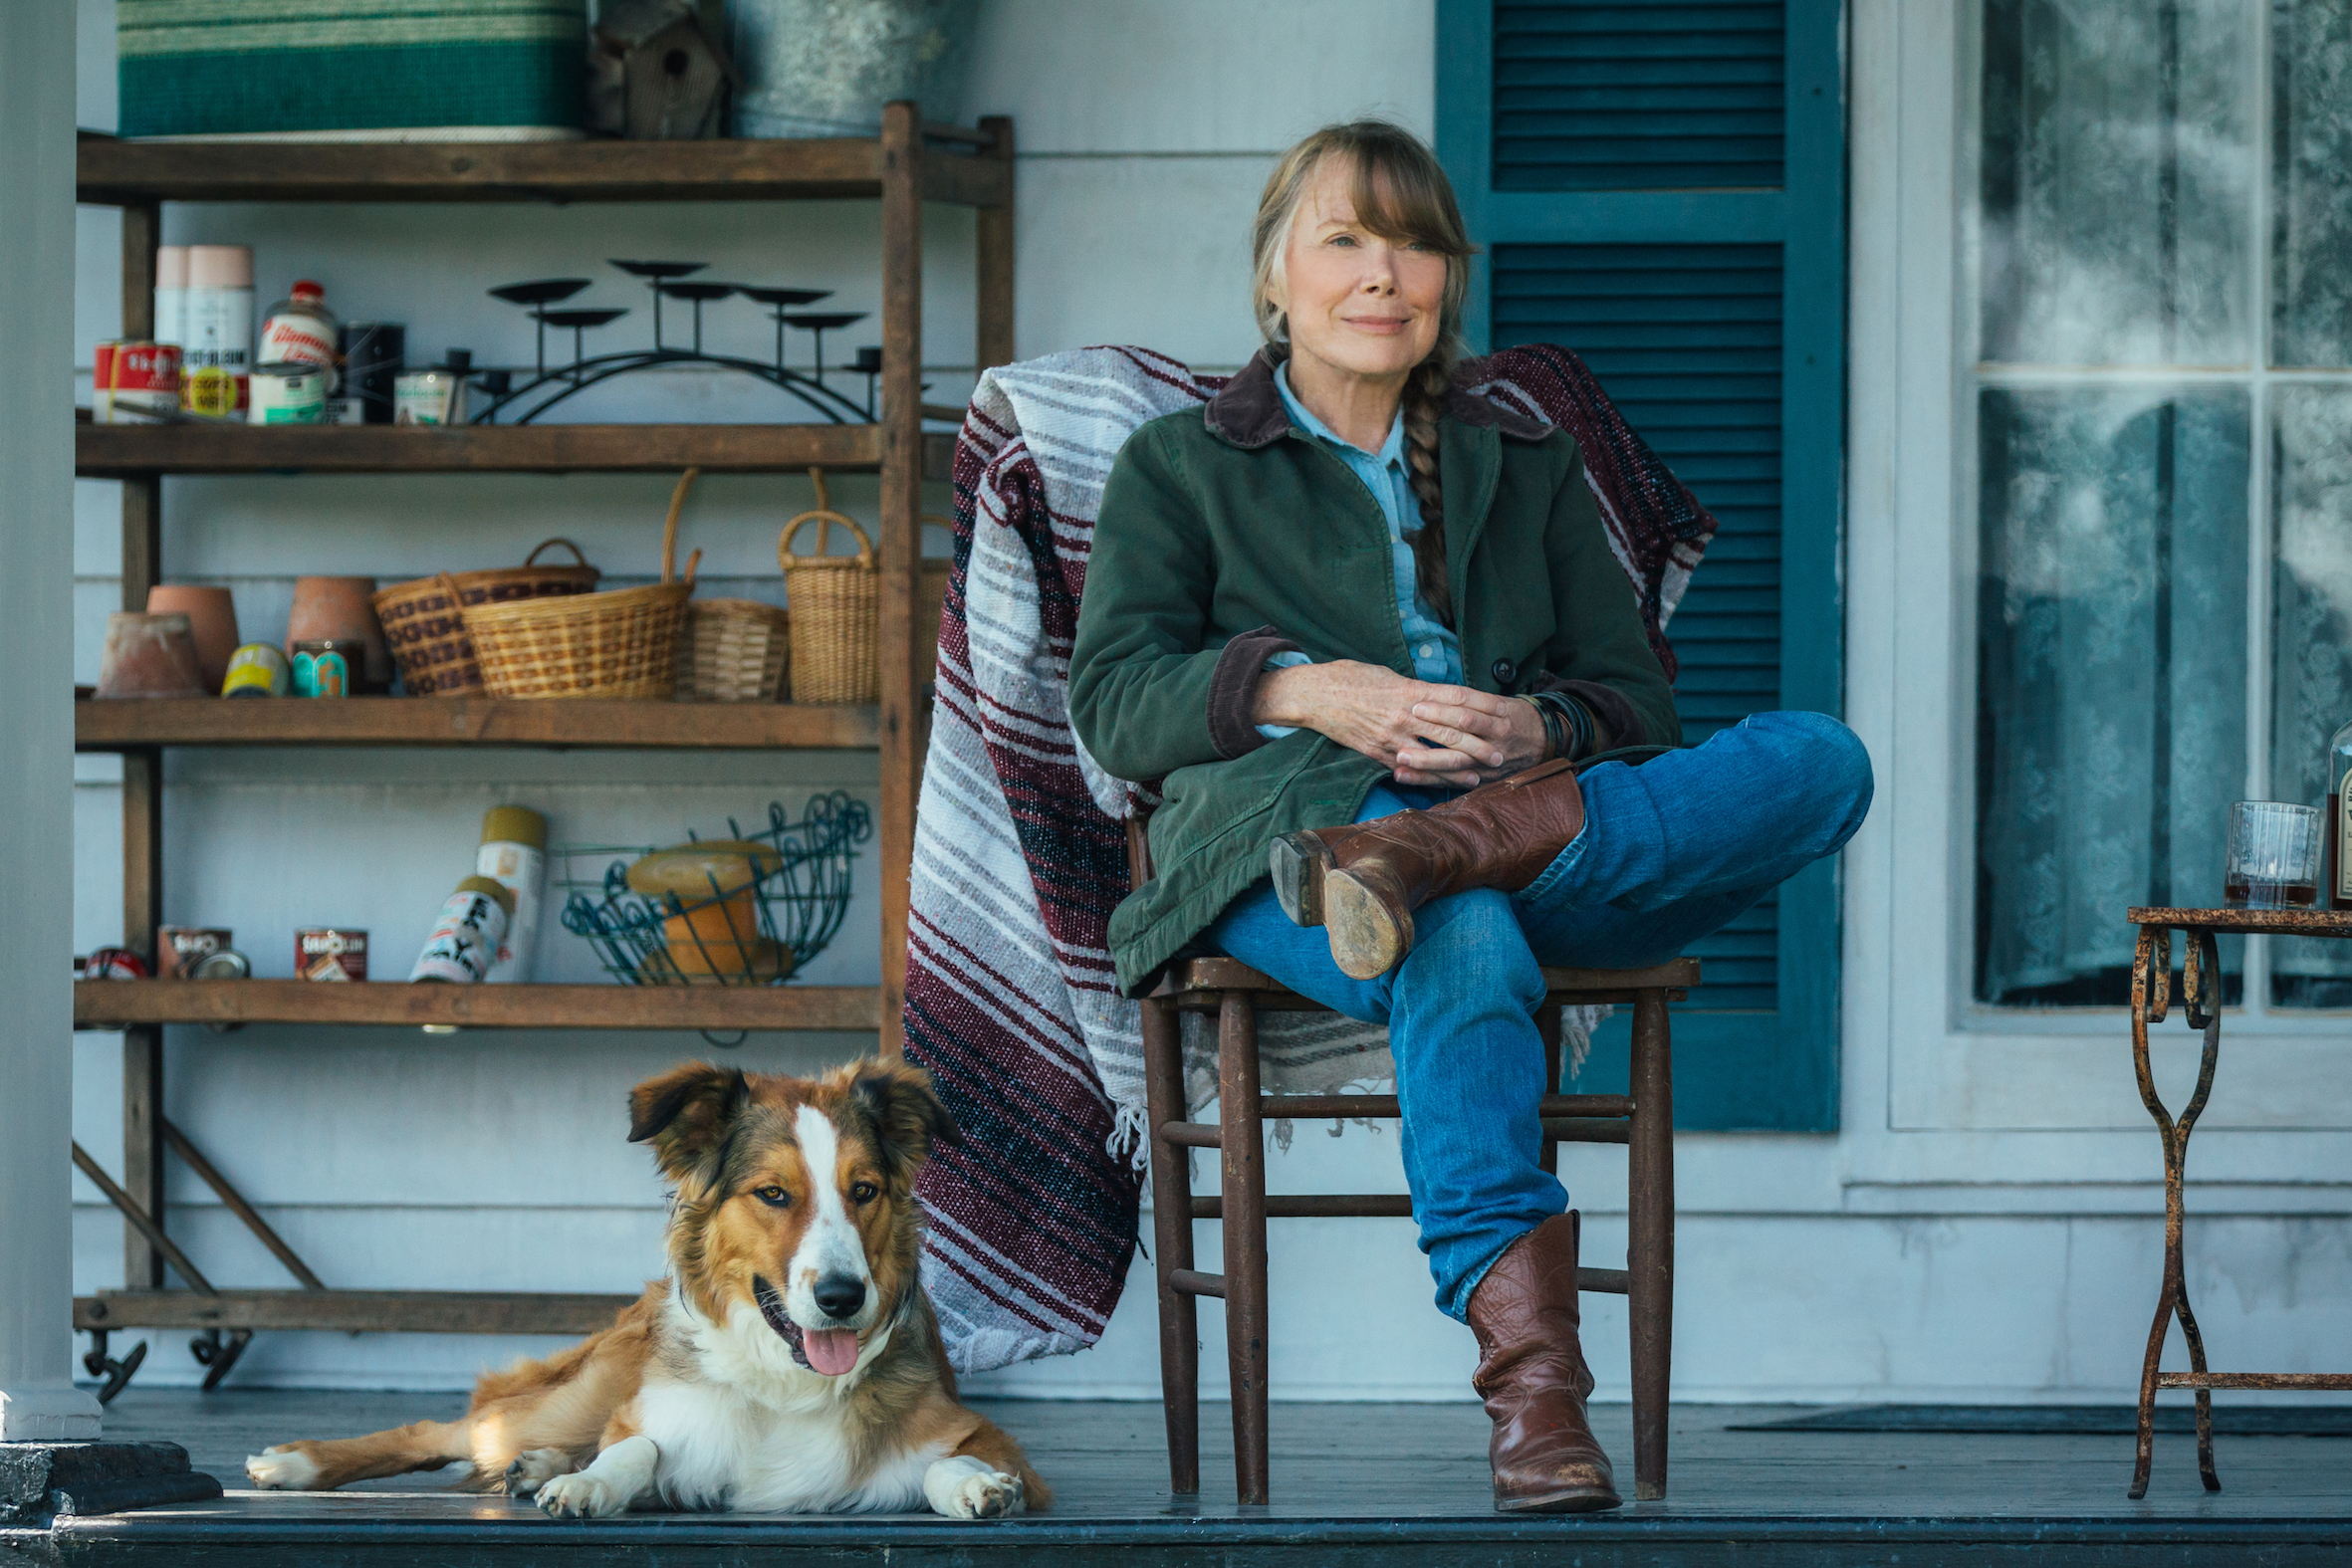 Filmstill aus "Ein Gauner & Gentleman": Eine Frau mittleren Alters sitzt lässig auf der Terrasse vor einem Haus. Sie trägt Westernstiefel, neben ihr ein Hund mit weißer Schnauze.